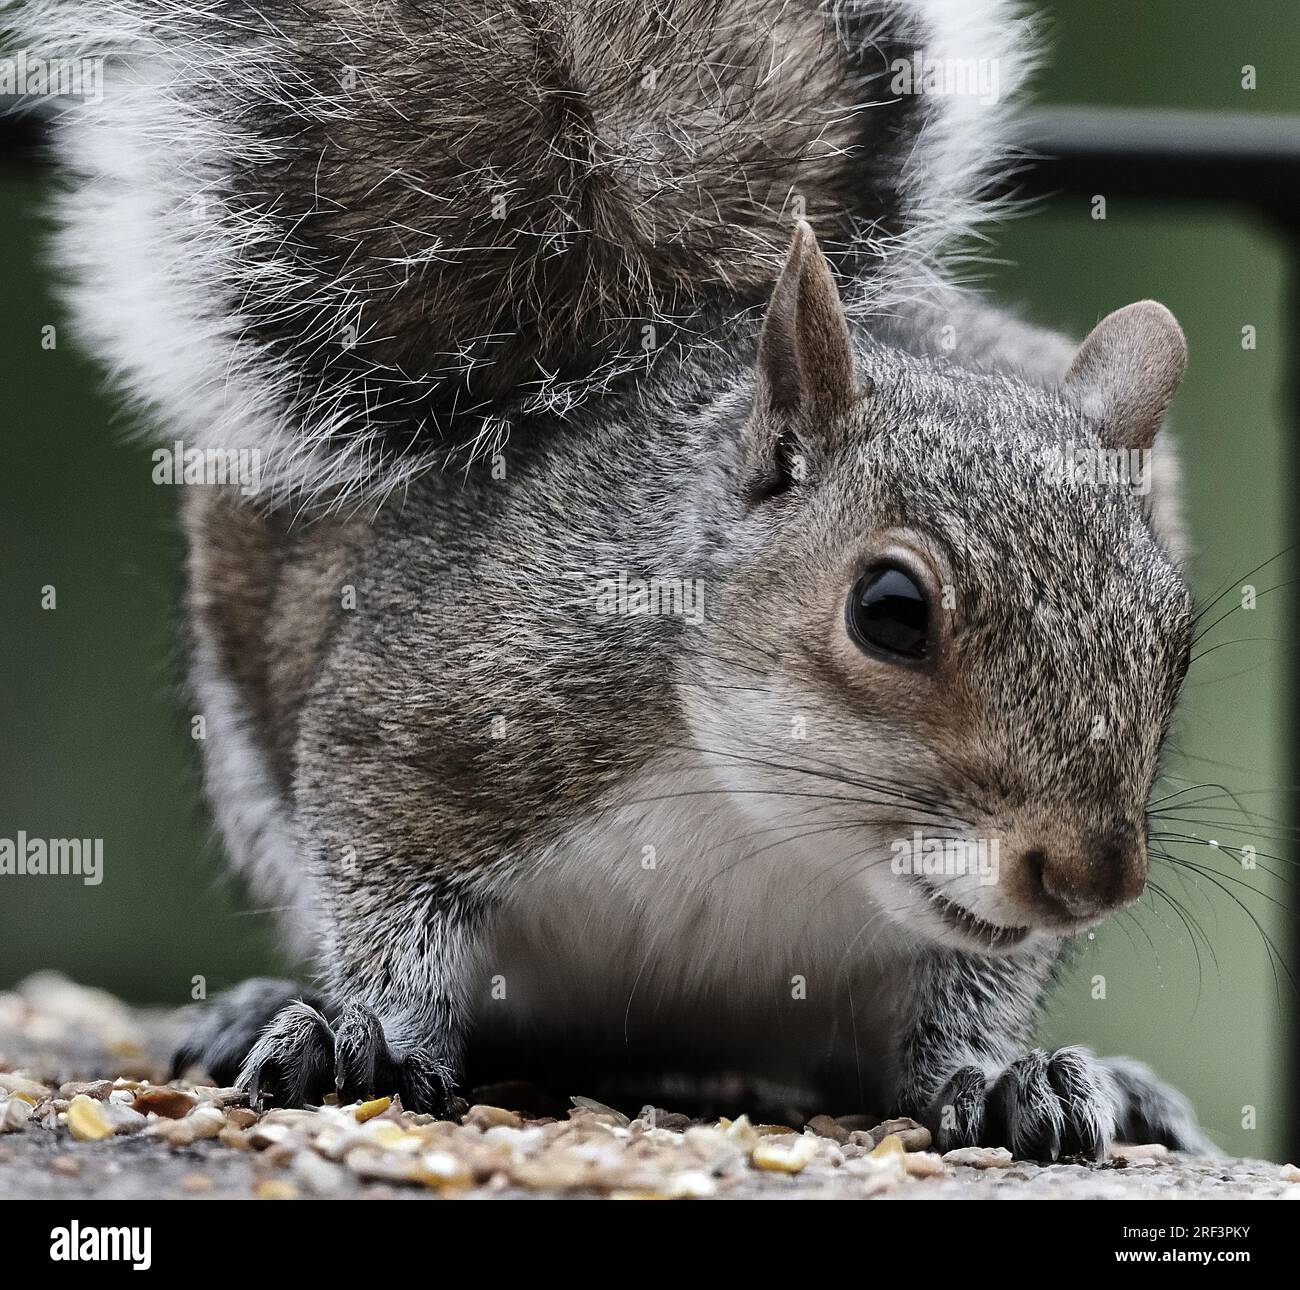 Das östliche graue Eichhörnchen, auch bekannt, vor allem außerhalb Nordamerikas, ist einfach das graue Eichhörnchen, ein Baumhörnchen der Gattung Sciurus Stockfoto